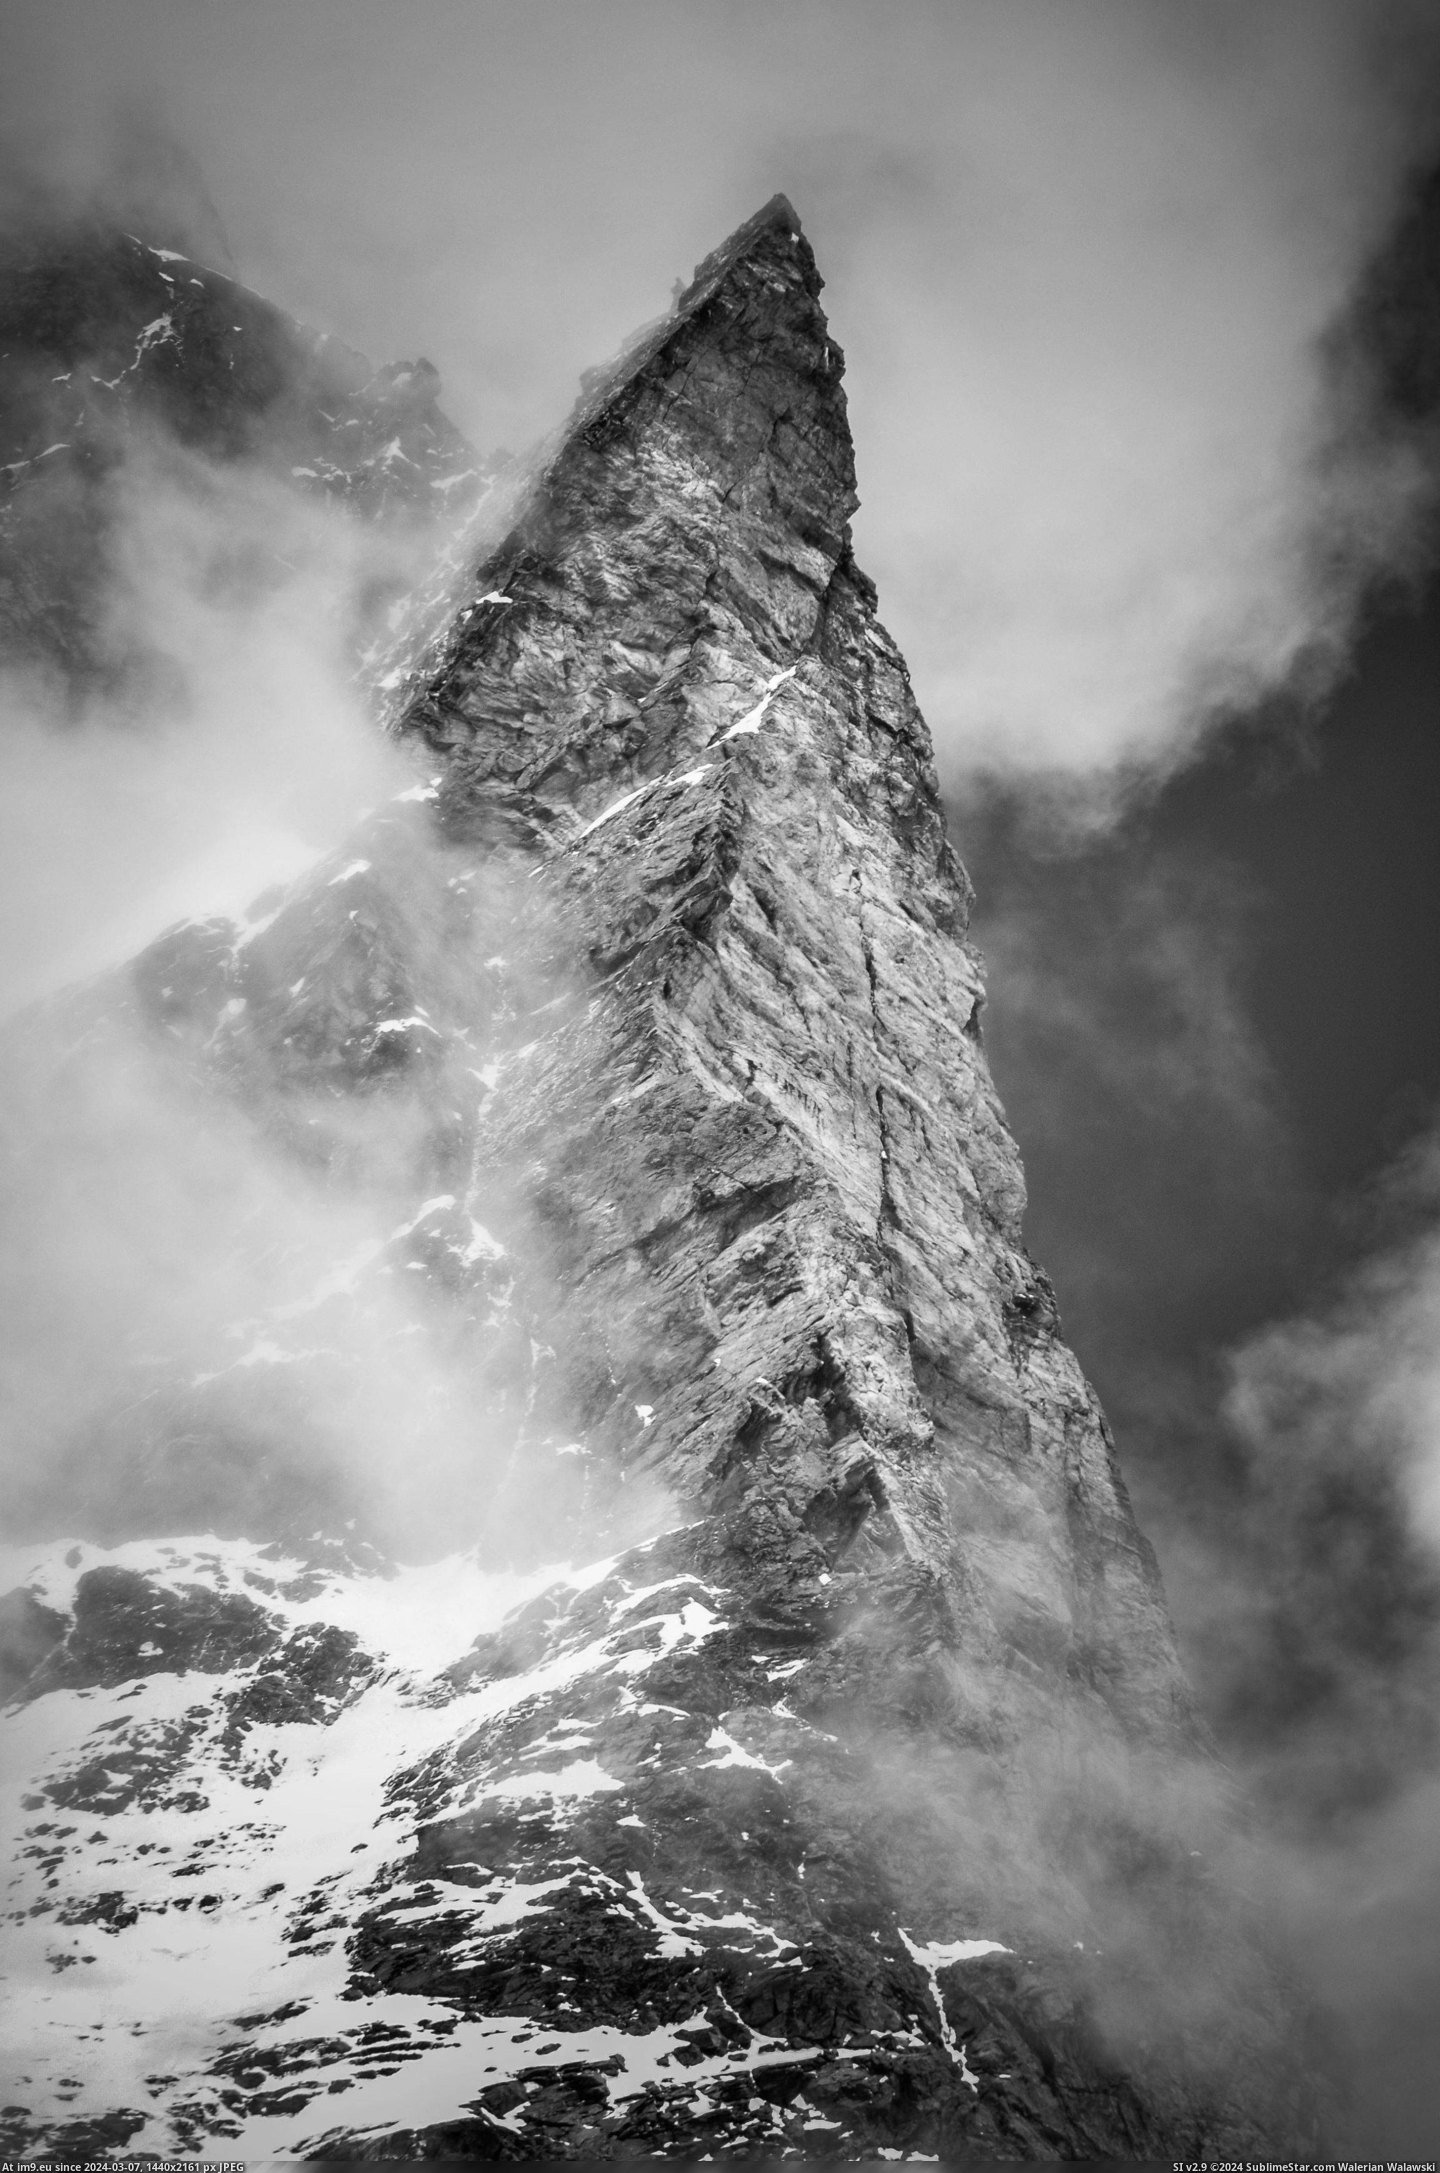  #Matterhorn  [Pics] The Matterhorn Pic. (Obraz z album My r/PICS favs))